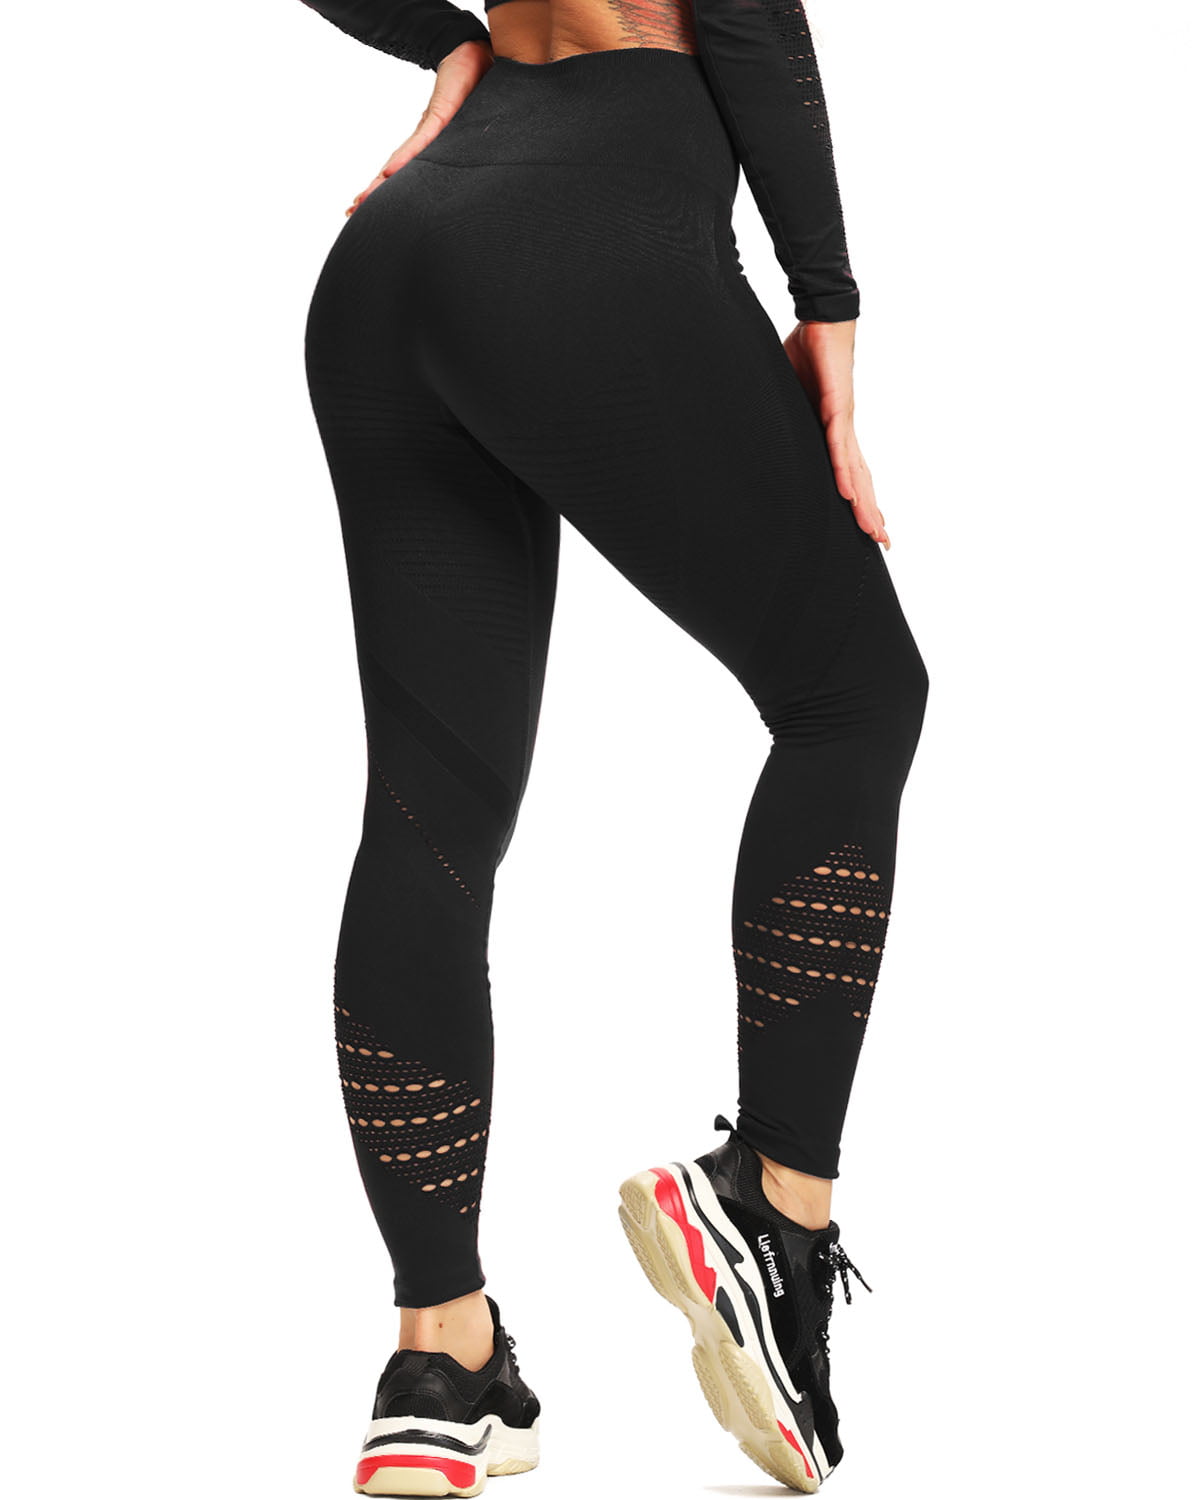 Women Short Pants Leggings Flex High-Waist Tummy Yoga Fitness Running Gym Black 